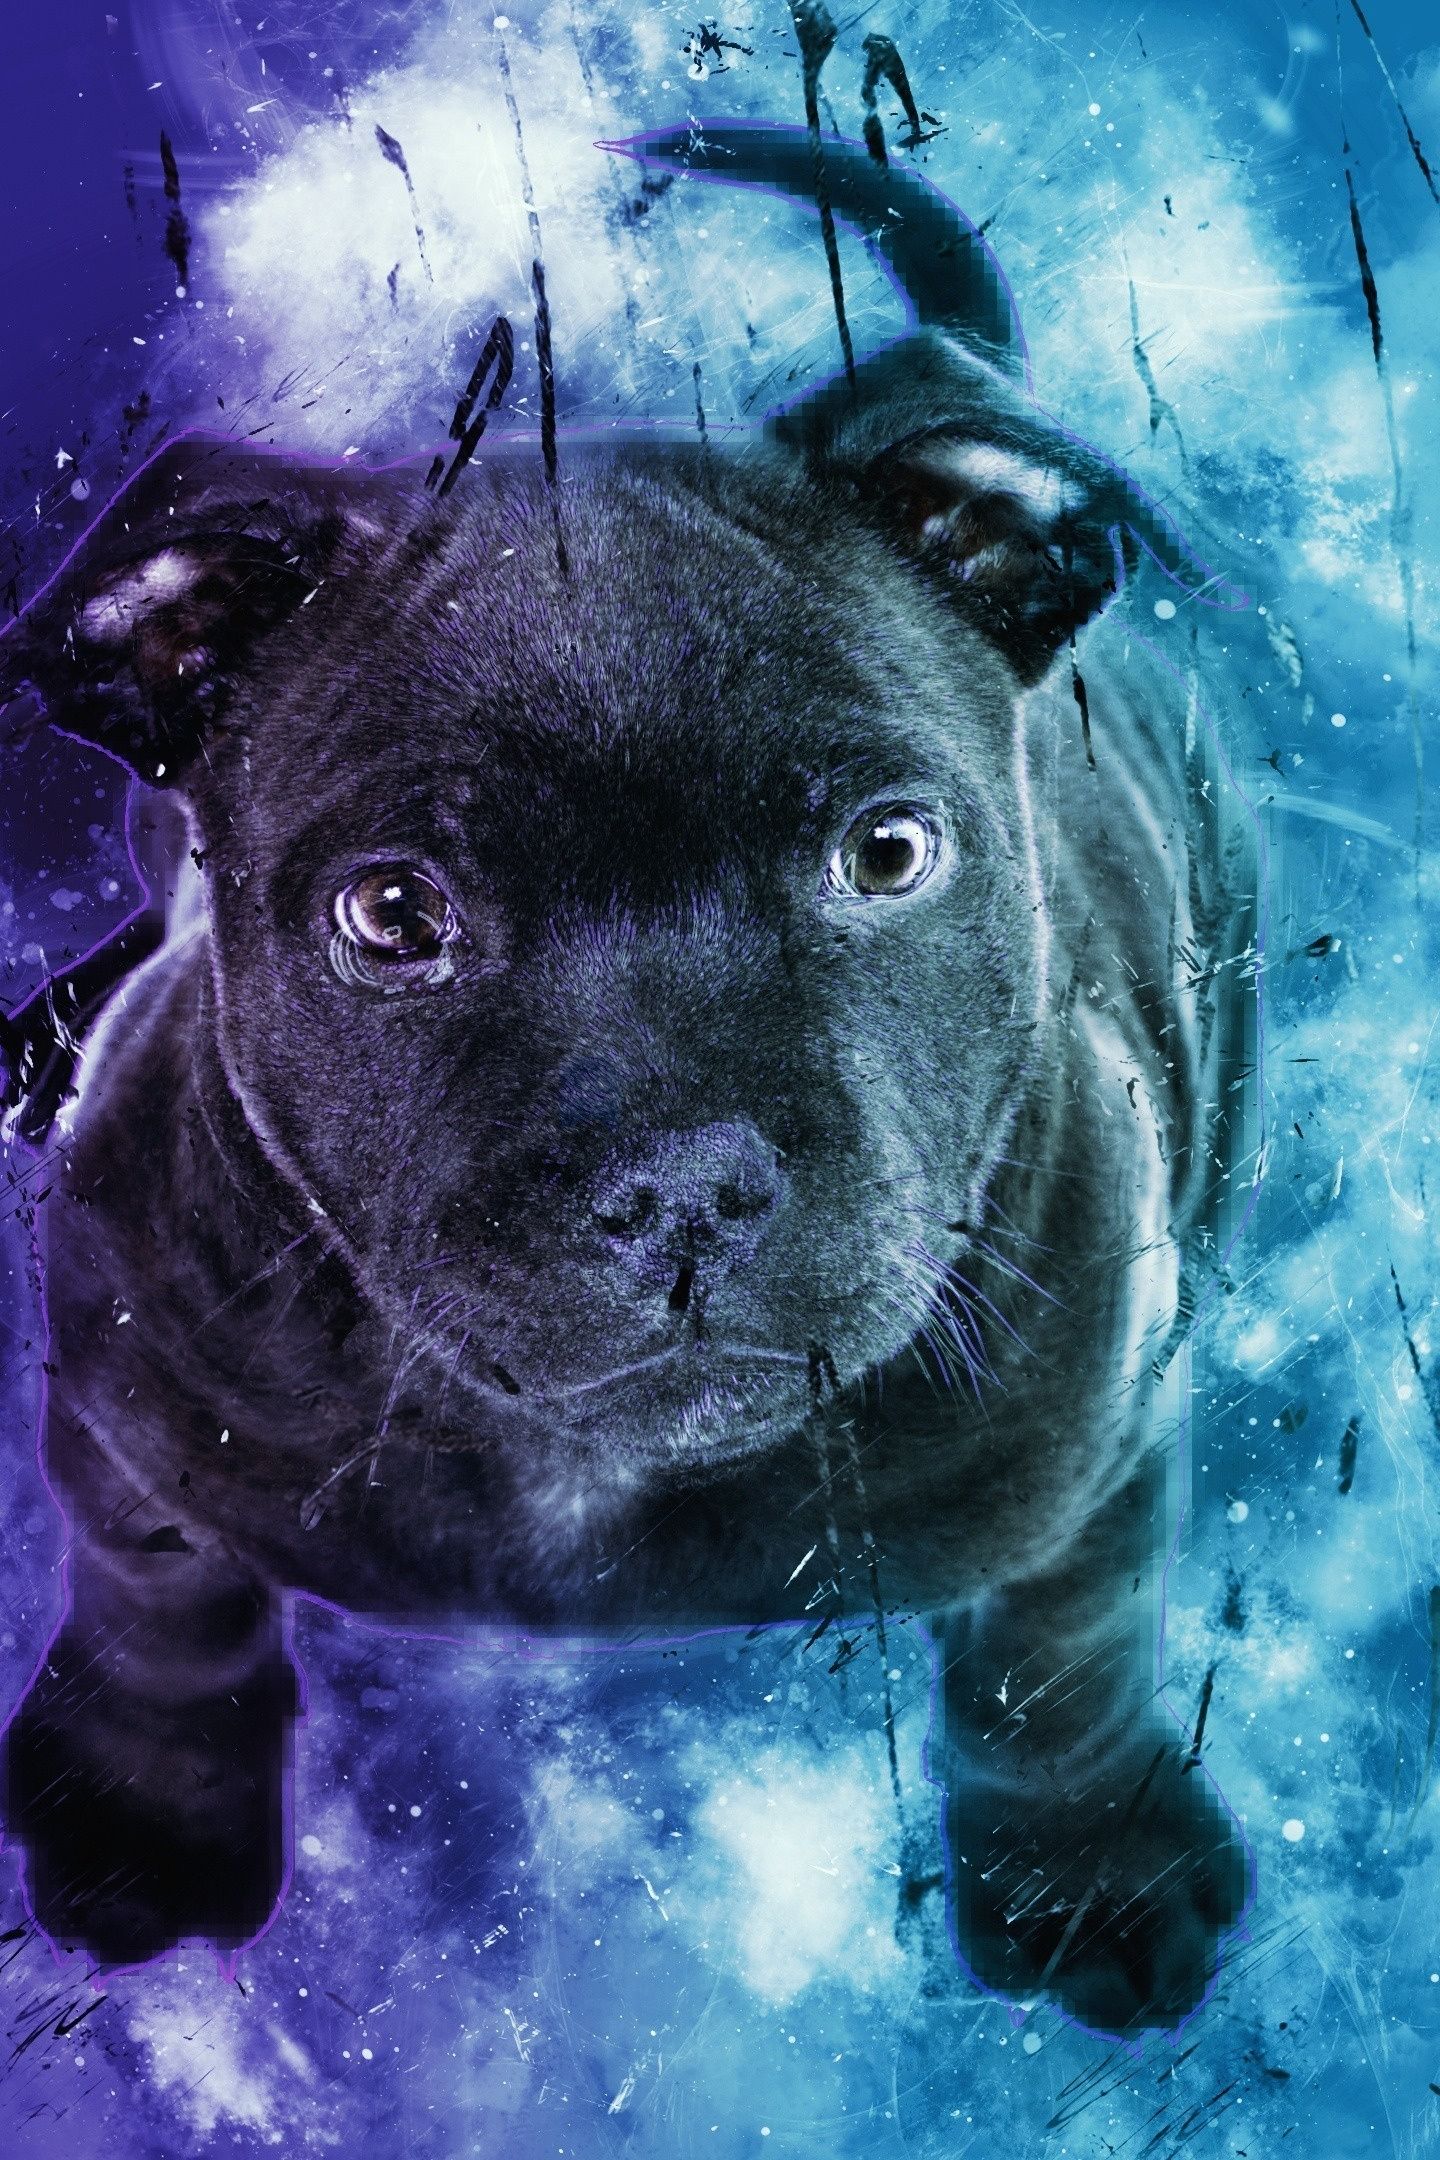 Tưởng tượng một chú chó đáng yêu đang phiêu lưu trong vũ trụ với bộ da bắt mắt giống như những ngôi sao trong đêm đầy lãng mạn. Hãy đến với bộ sưu tập hình nền chó phiêu lưu vào không gian đầy bất ngờ và nhấn ấn bức ảnh này.